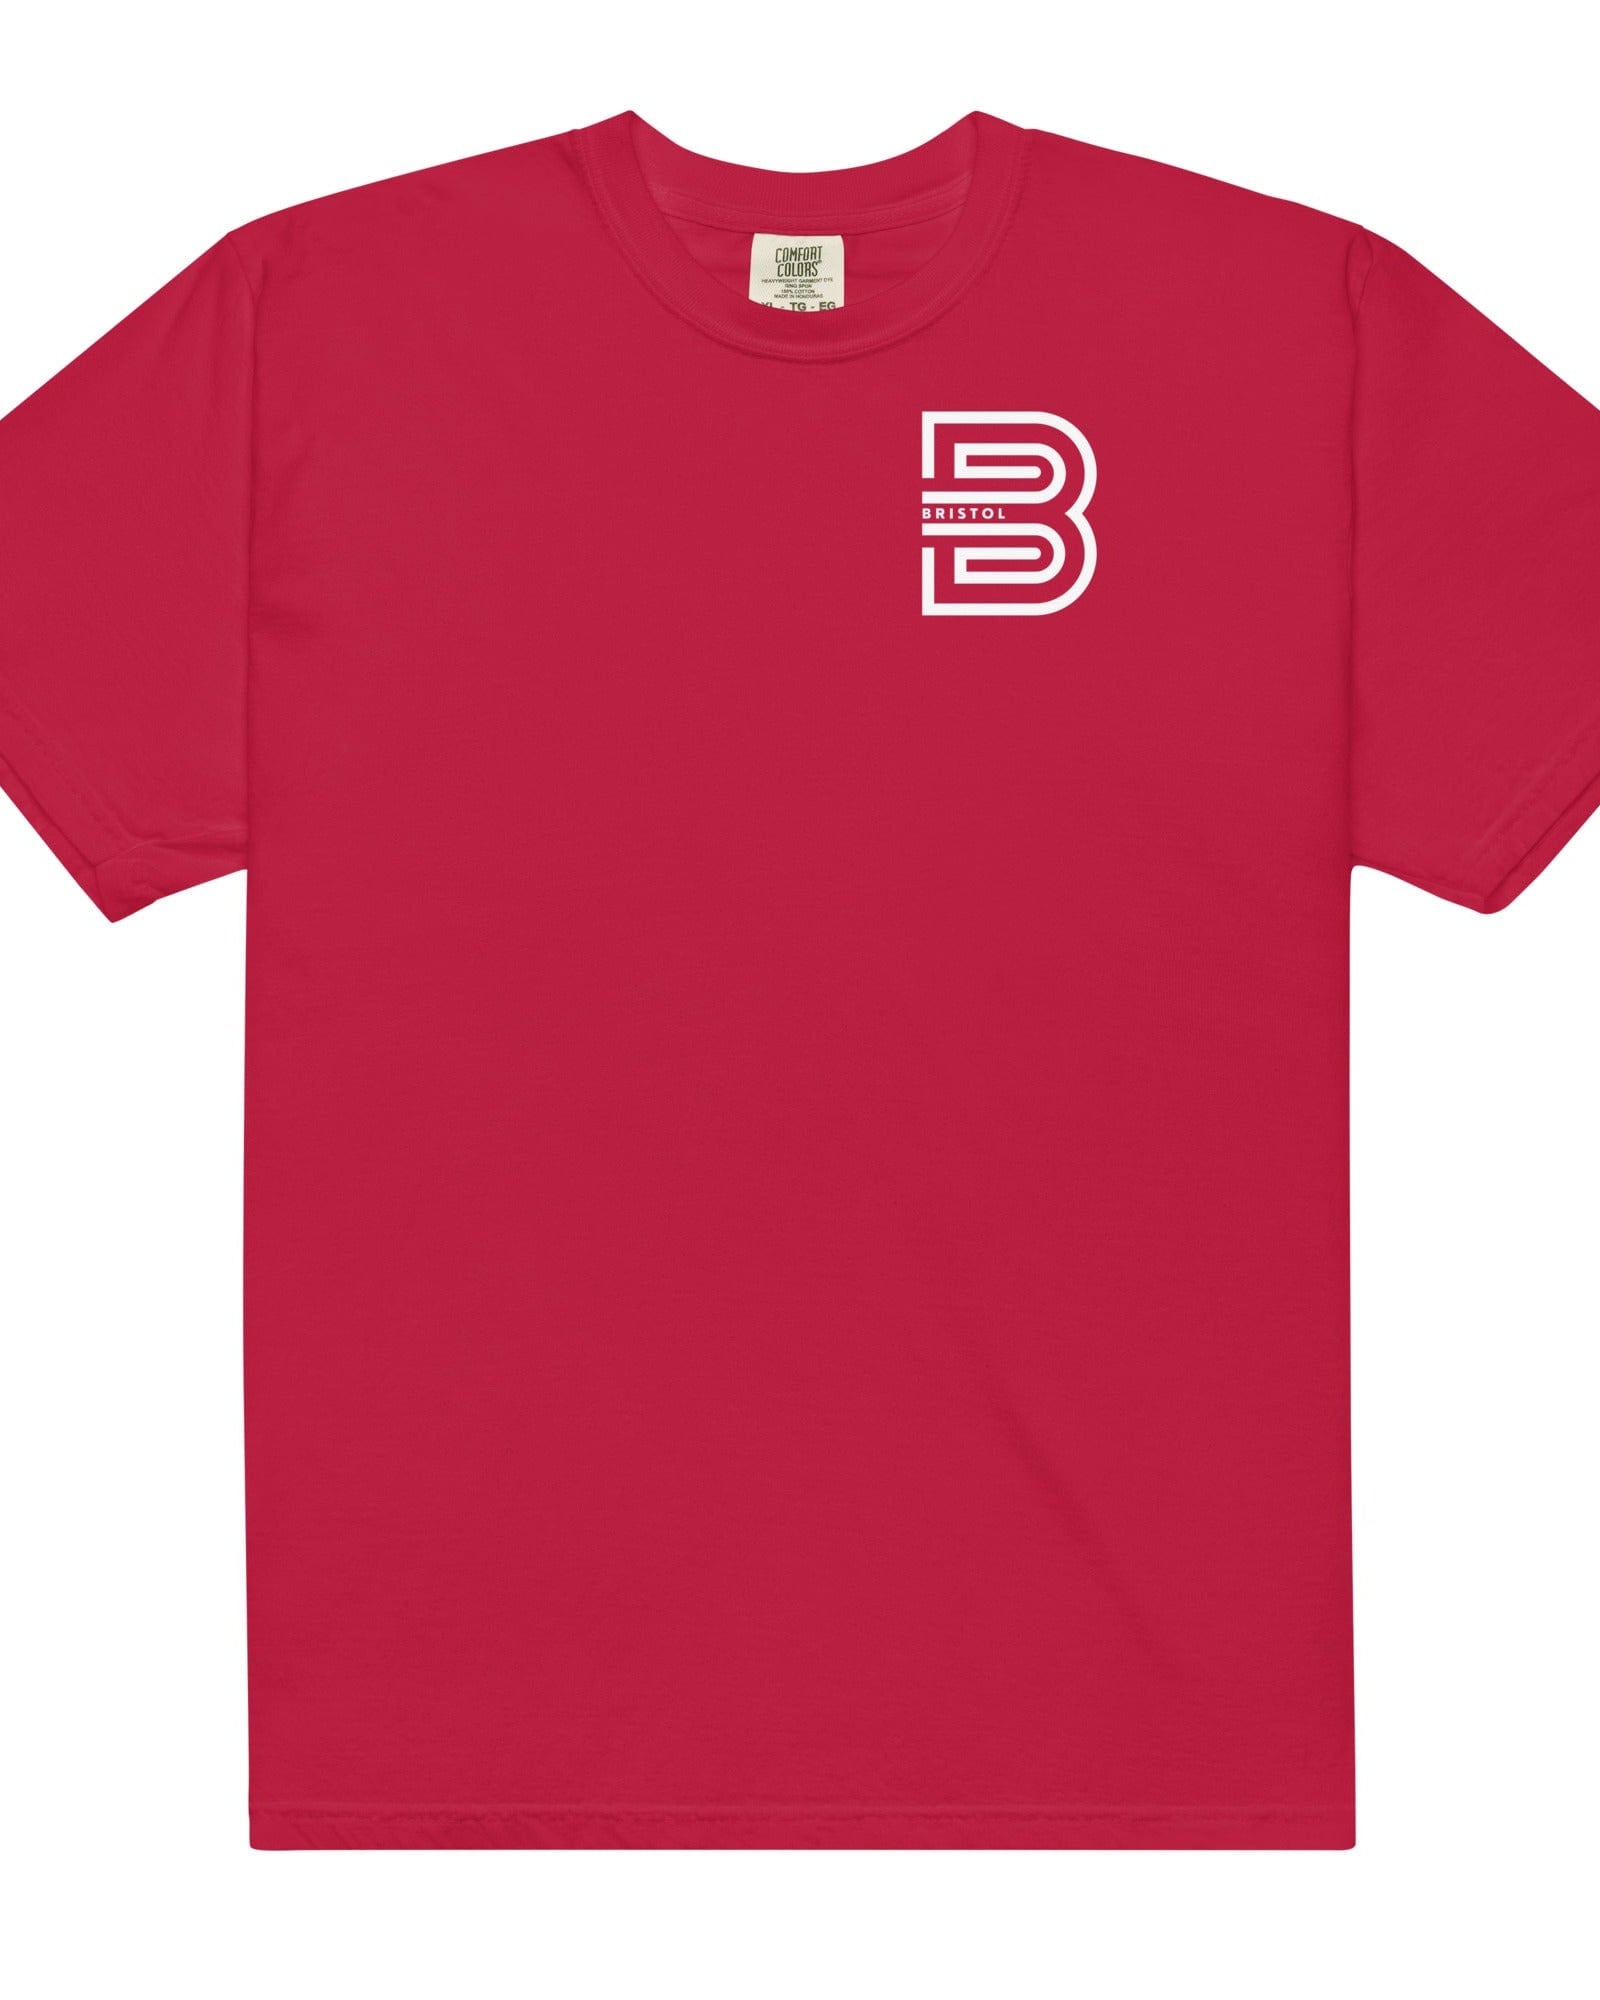 Bristol B T-shirt | Garment-dyed Heavyweight Red / S Shirts & Tops Jolly & Goode